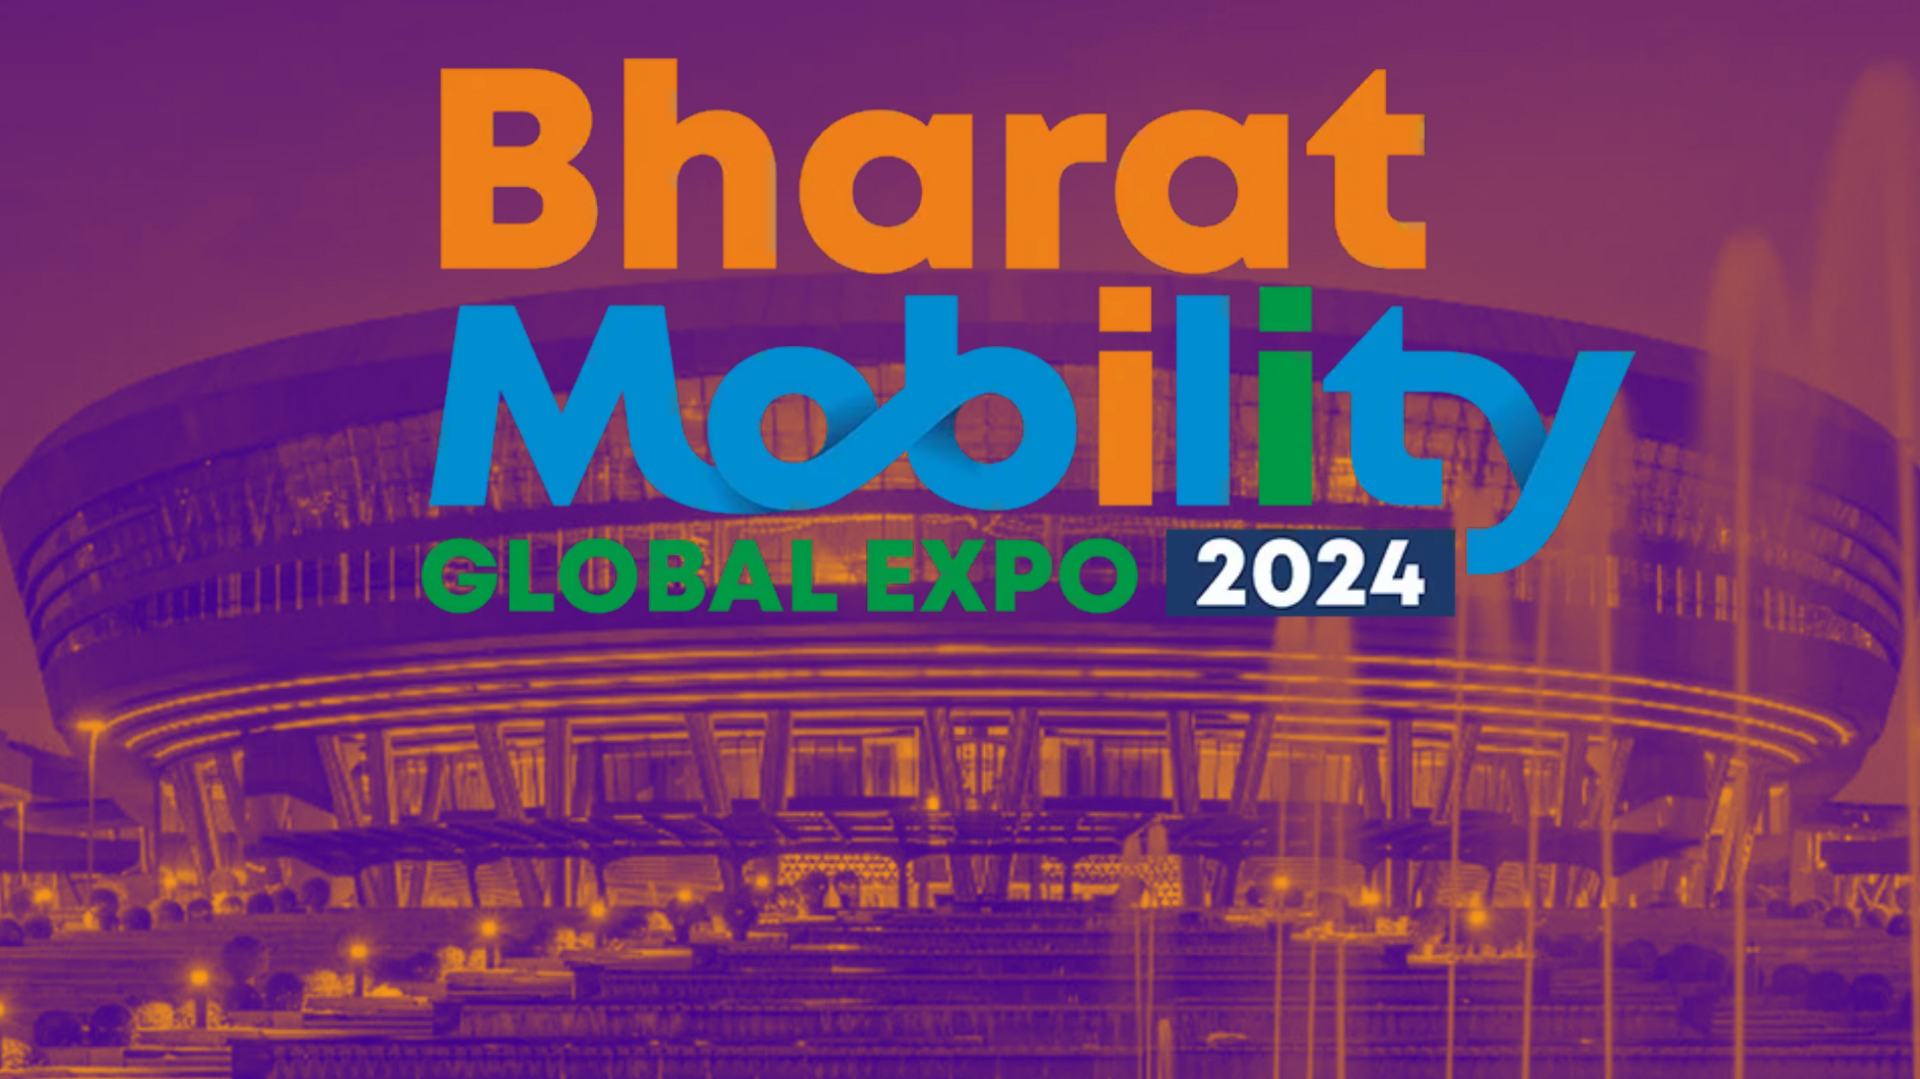 भारत मोबिलिटी ग्लोबल एक्सपो 2024 का आज से आगाज, 28 कंपनियां लेंगी हिस्सा 